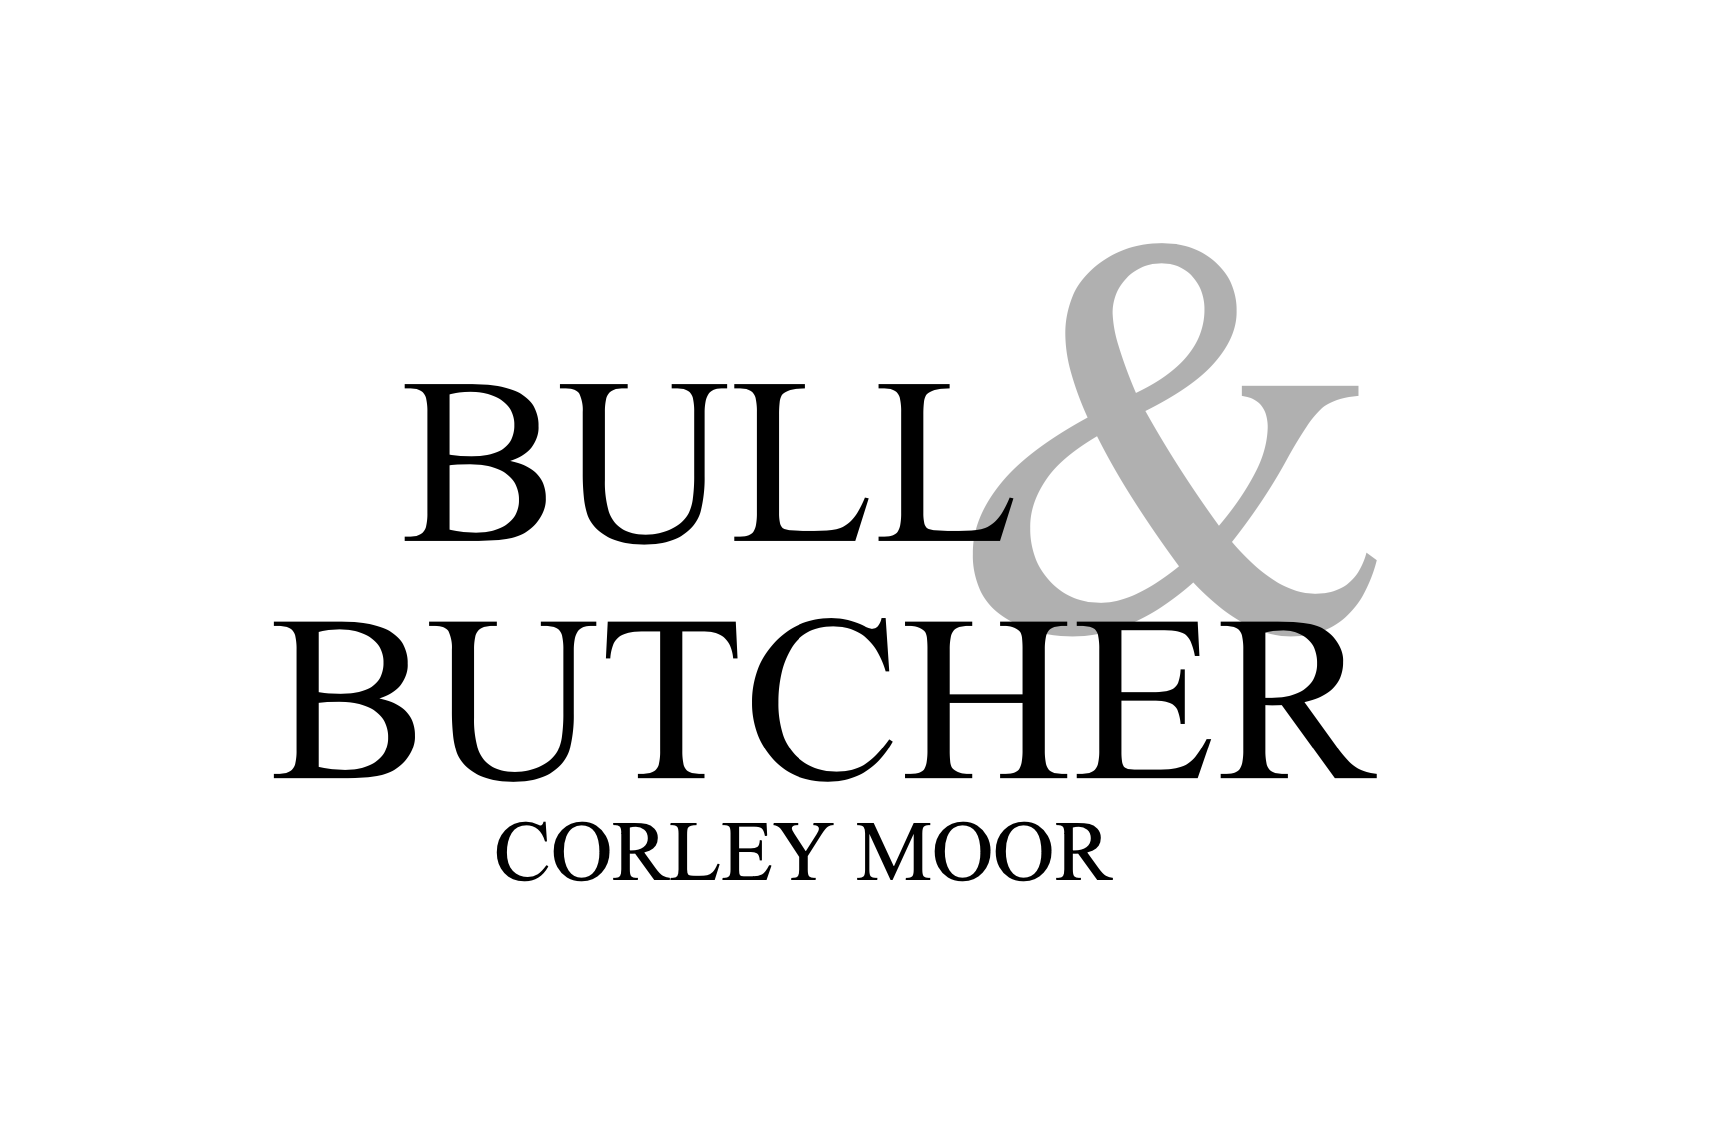 BULL & BUTCHER CORLEY MOOR